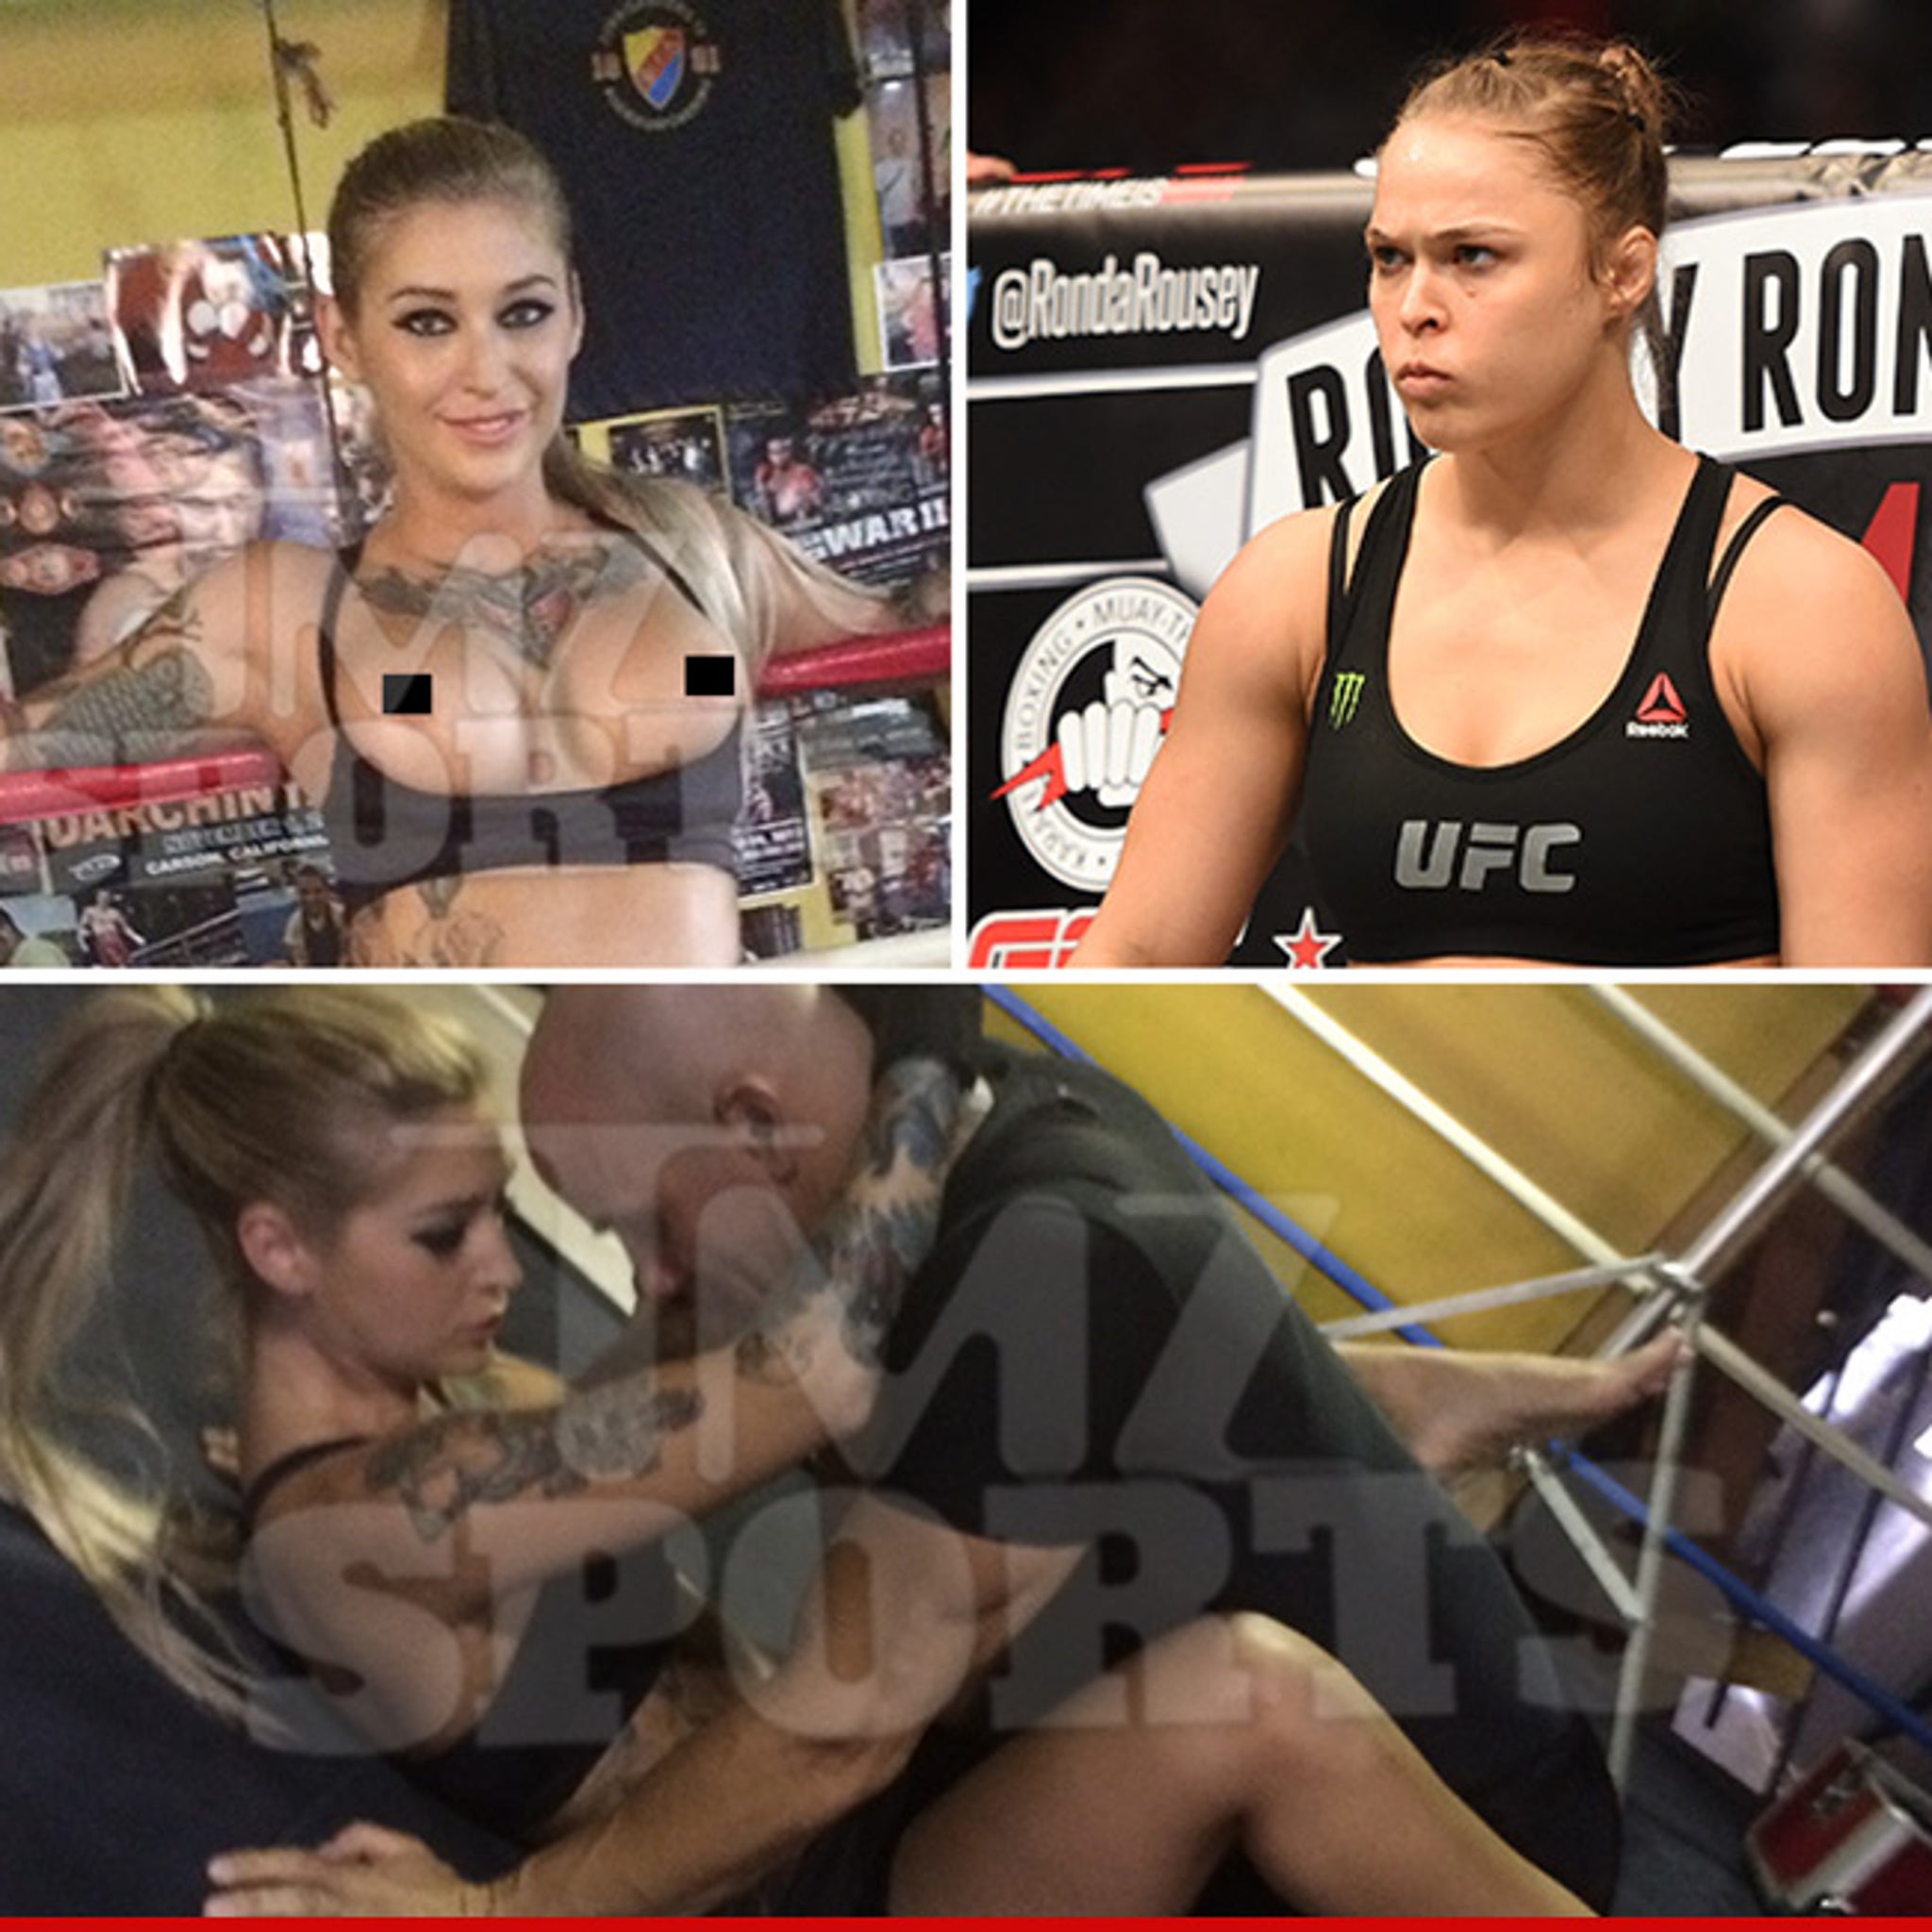 Ronda Rousey Hardcore Porn - Ronda Rousey -- Hardcore Porn Parody ... 'Ronda ArouseMe'